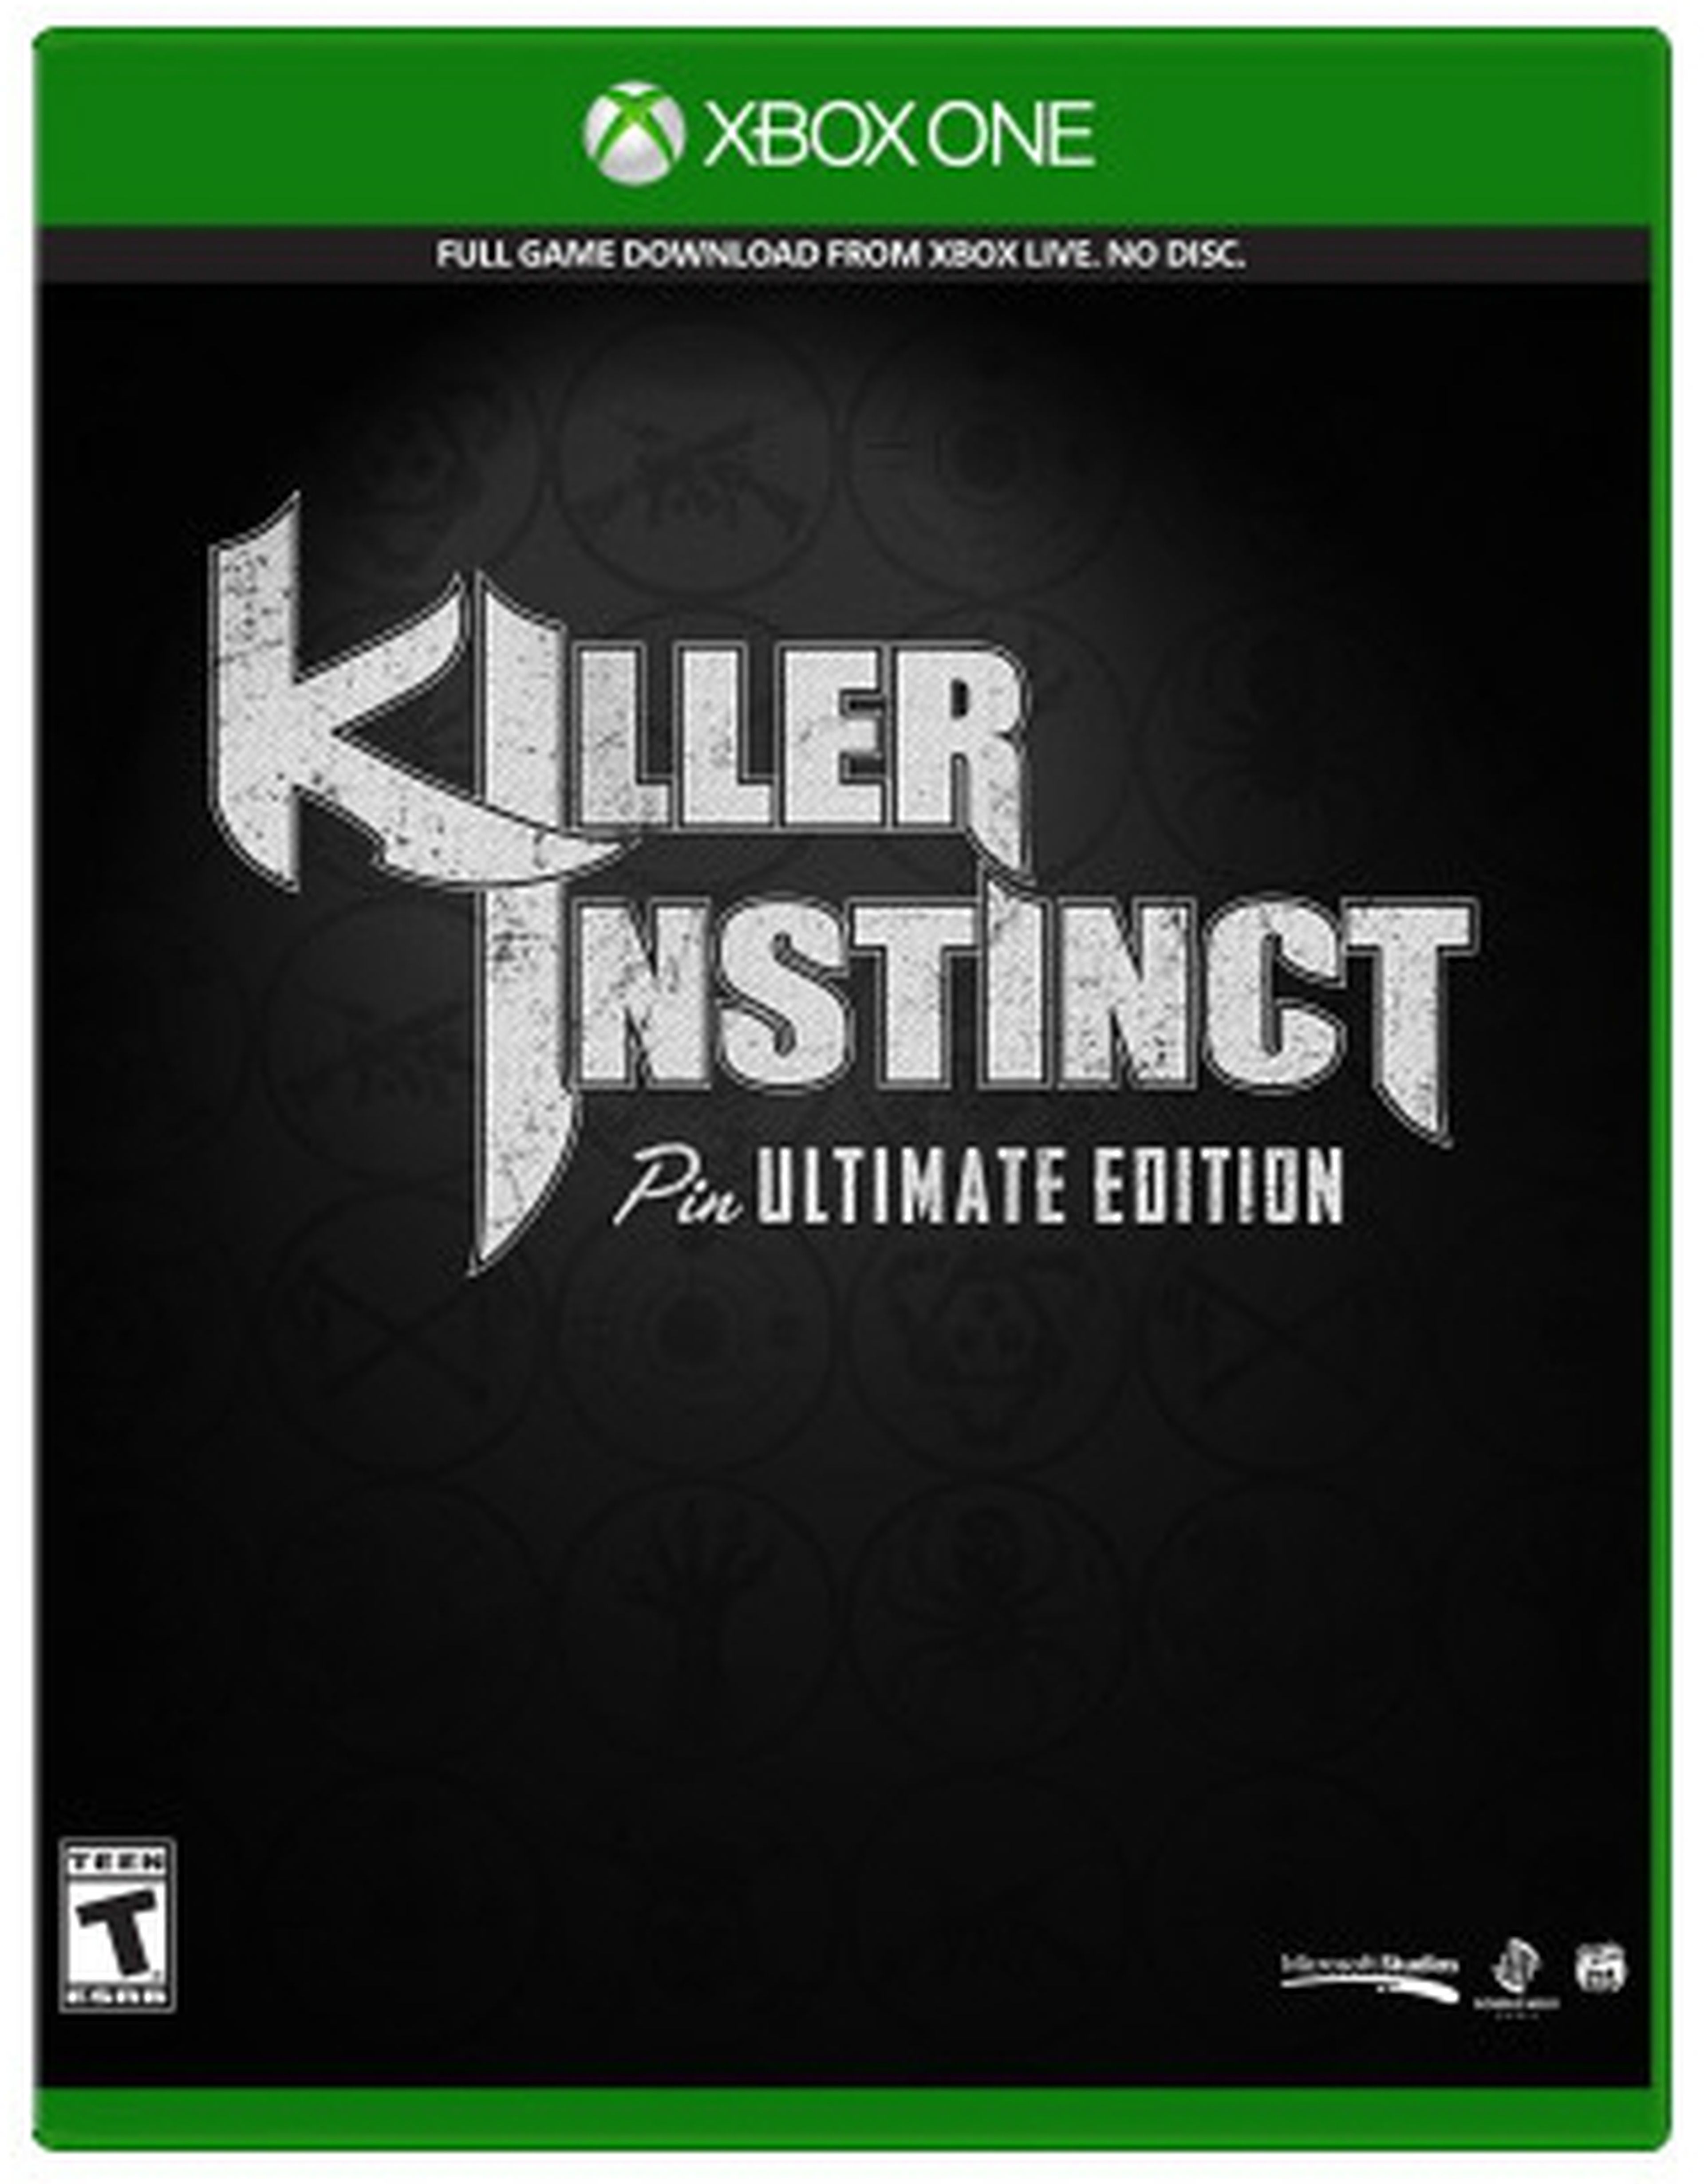 Anunciada la Pin Ultimate Edition de Killer Instinct